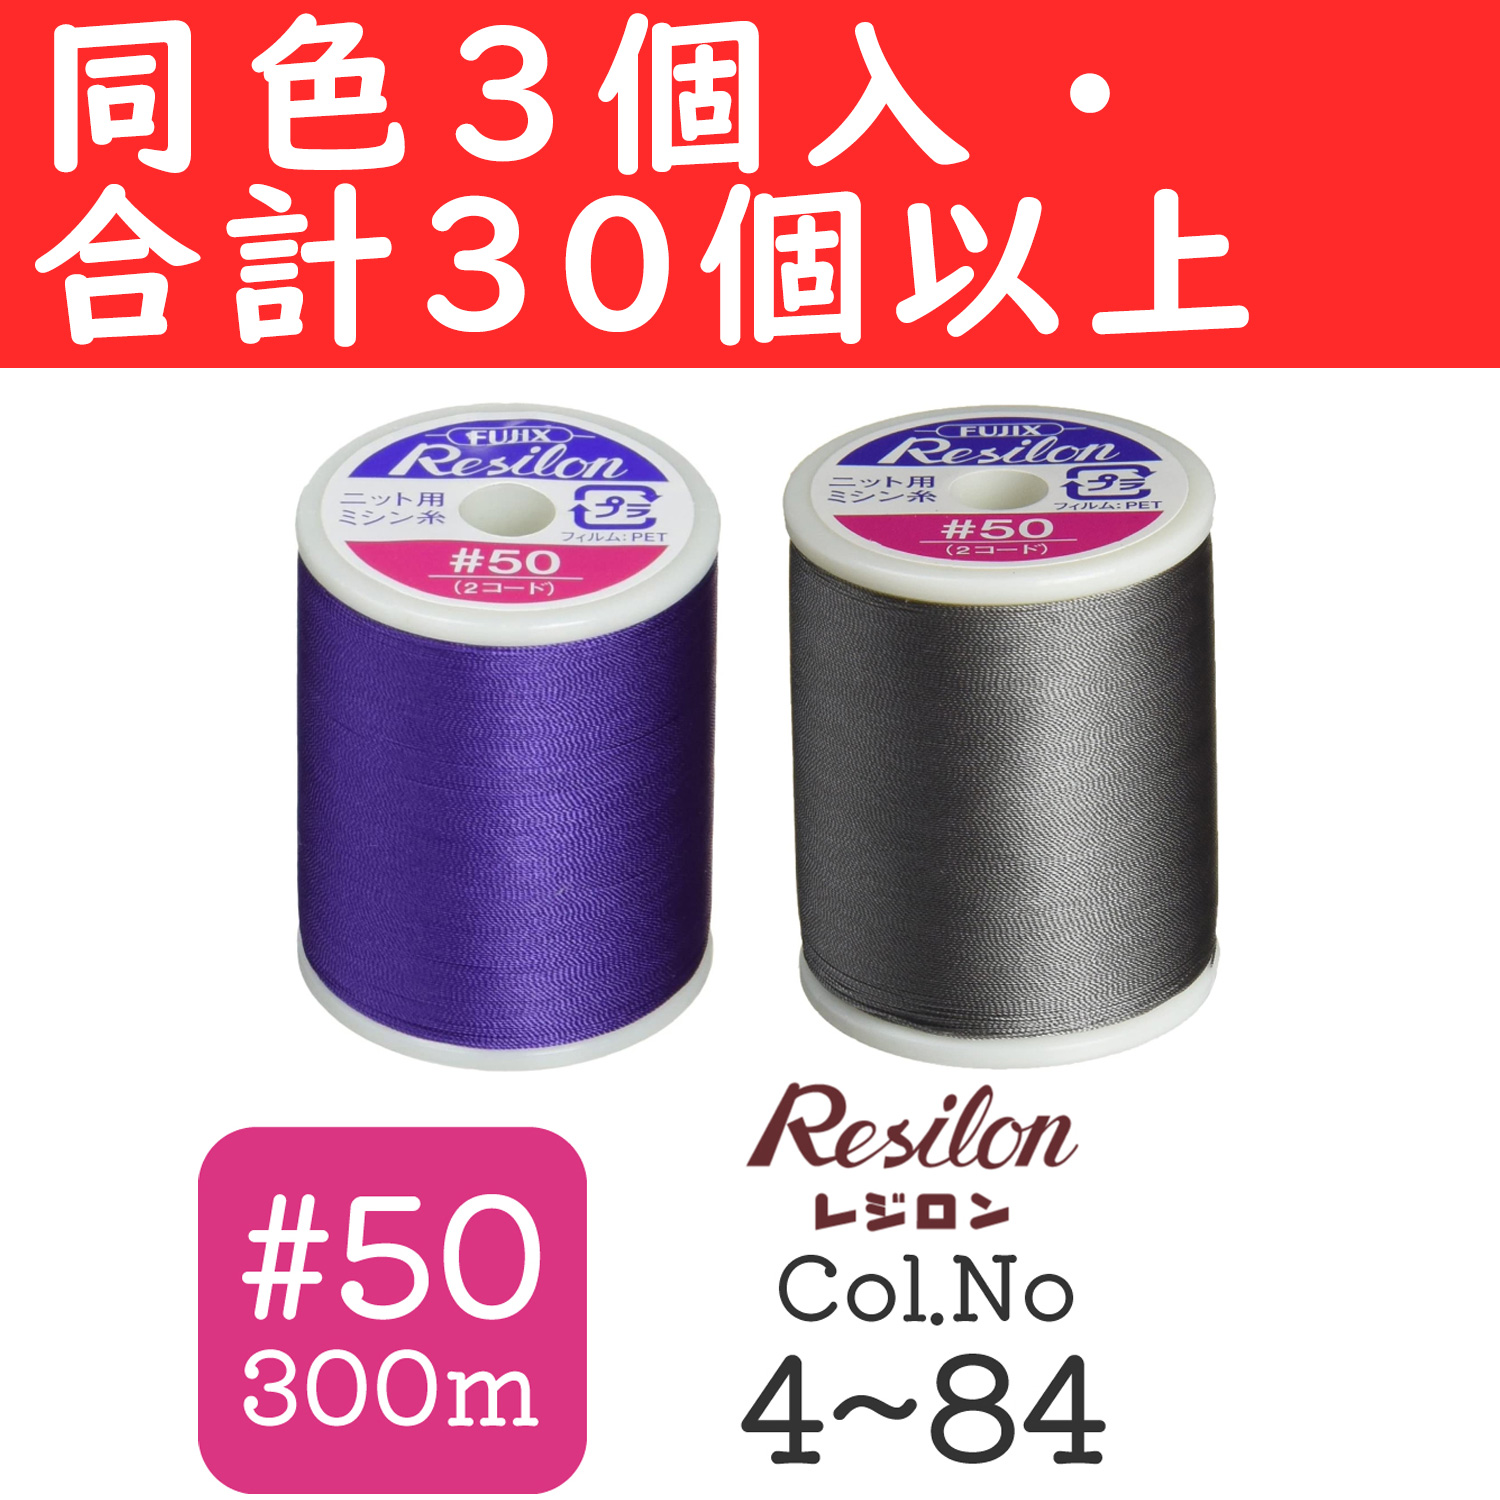 あなたにおすすめの商品 ニット用ミシン糸 レジロン #50 300m 90番色 Fujix フジックス